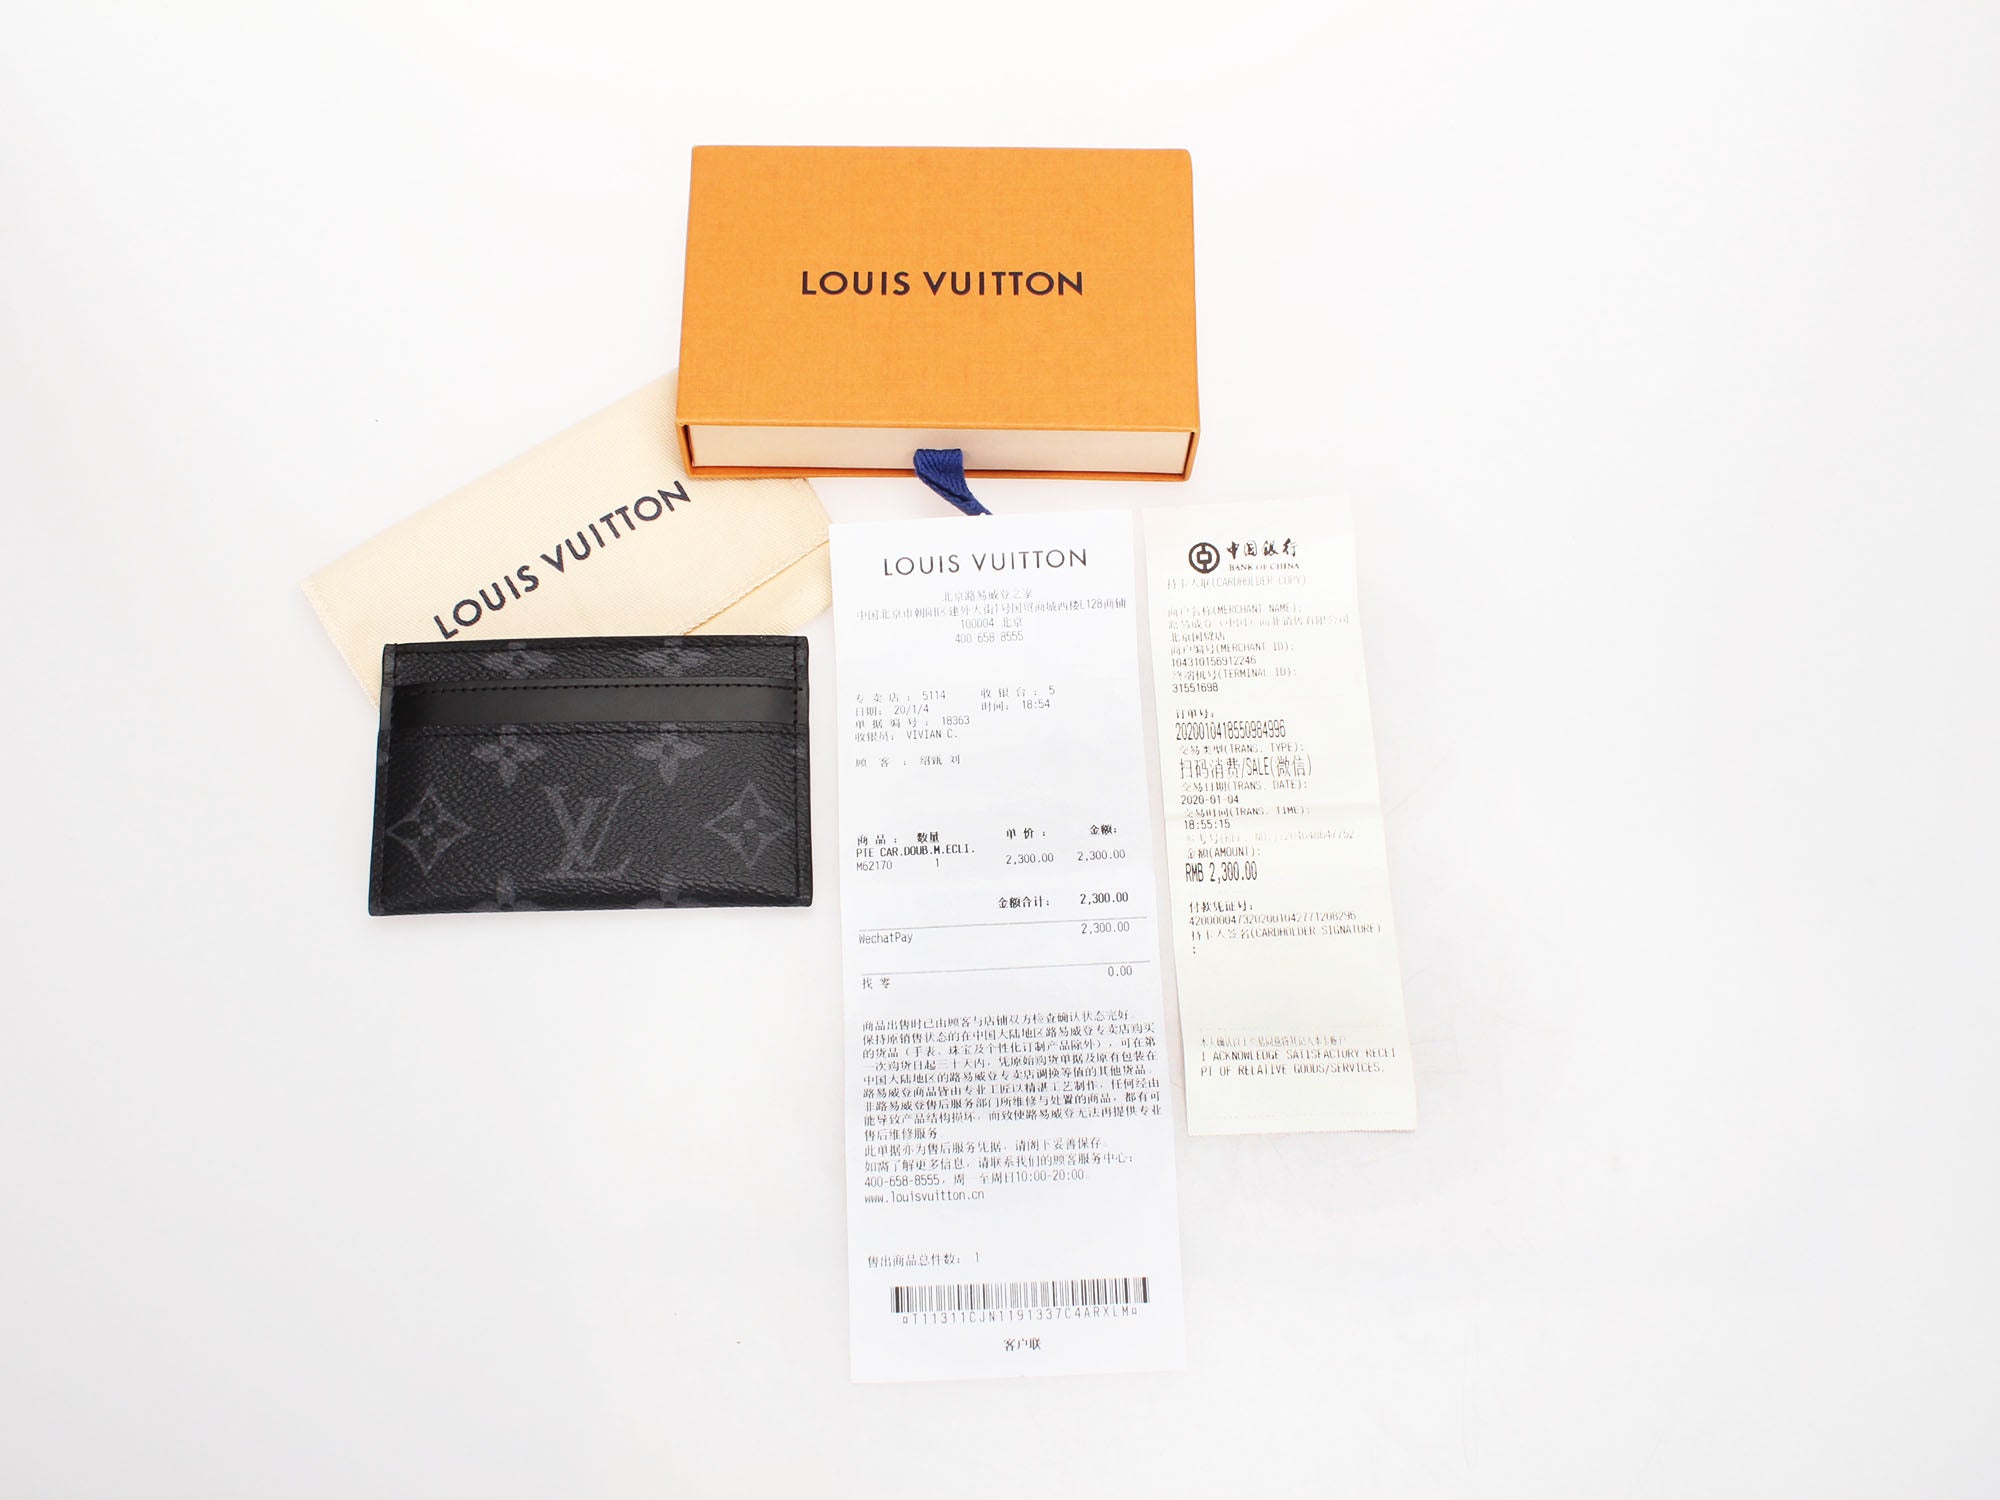 LOUIS VUITTON Louis Vuitton Porto Cult Double M62170 Black